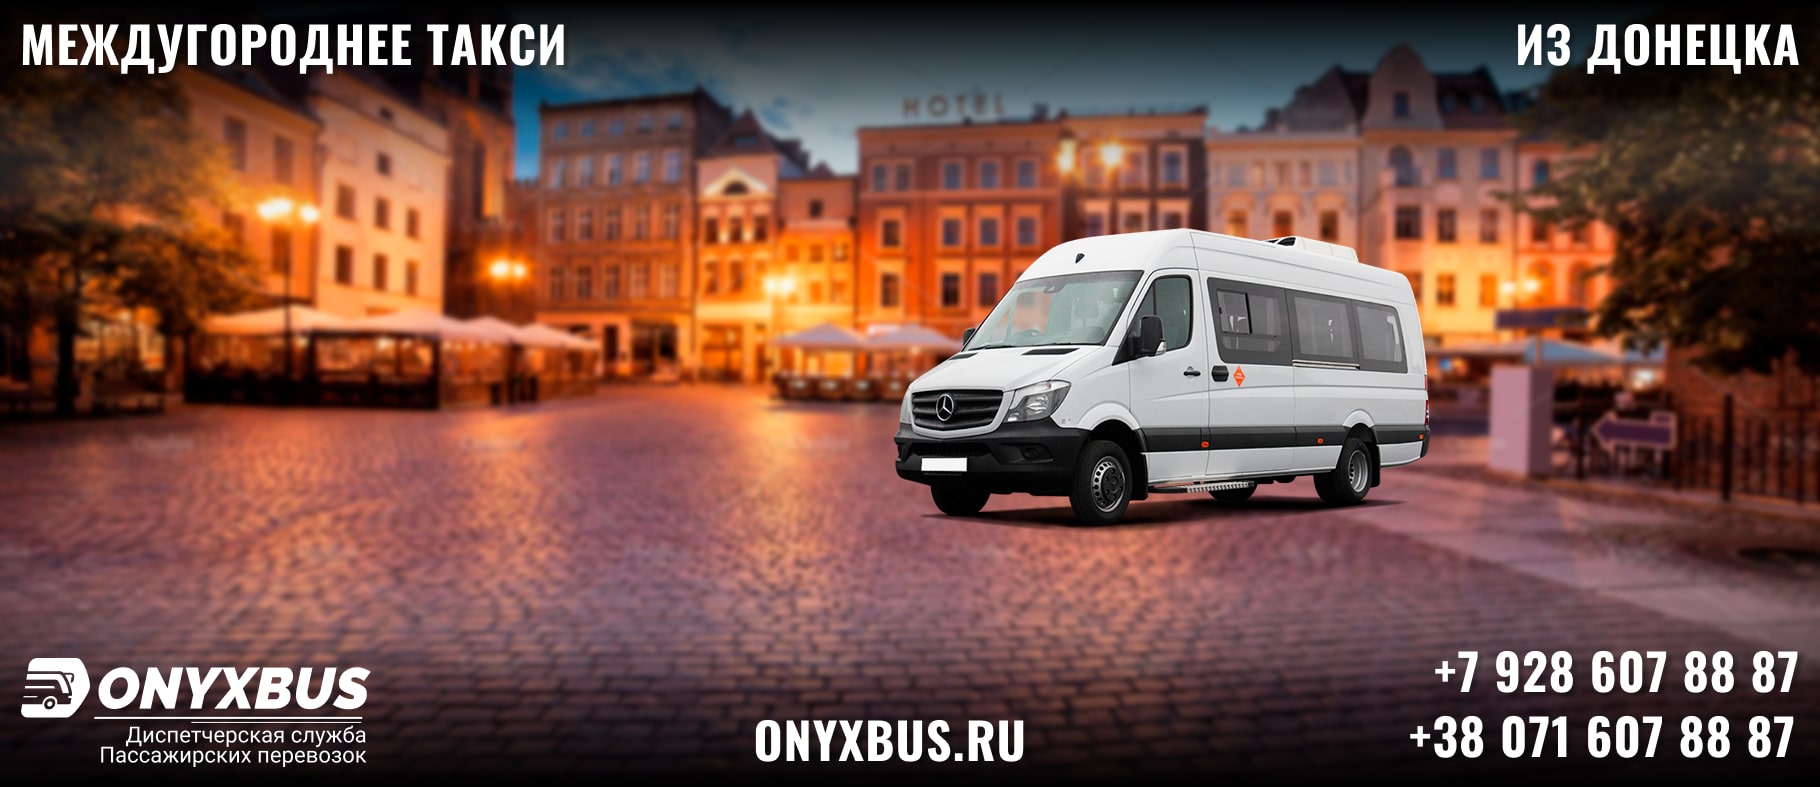 Заказ <br>Микроавтобуса Донецк - Самара